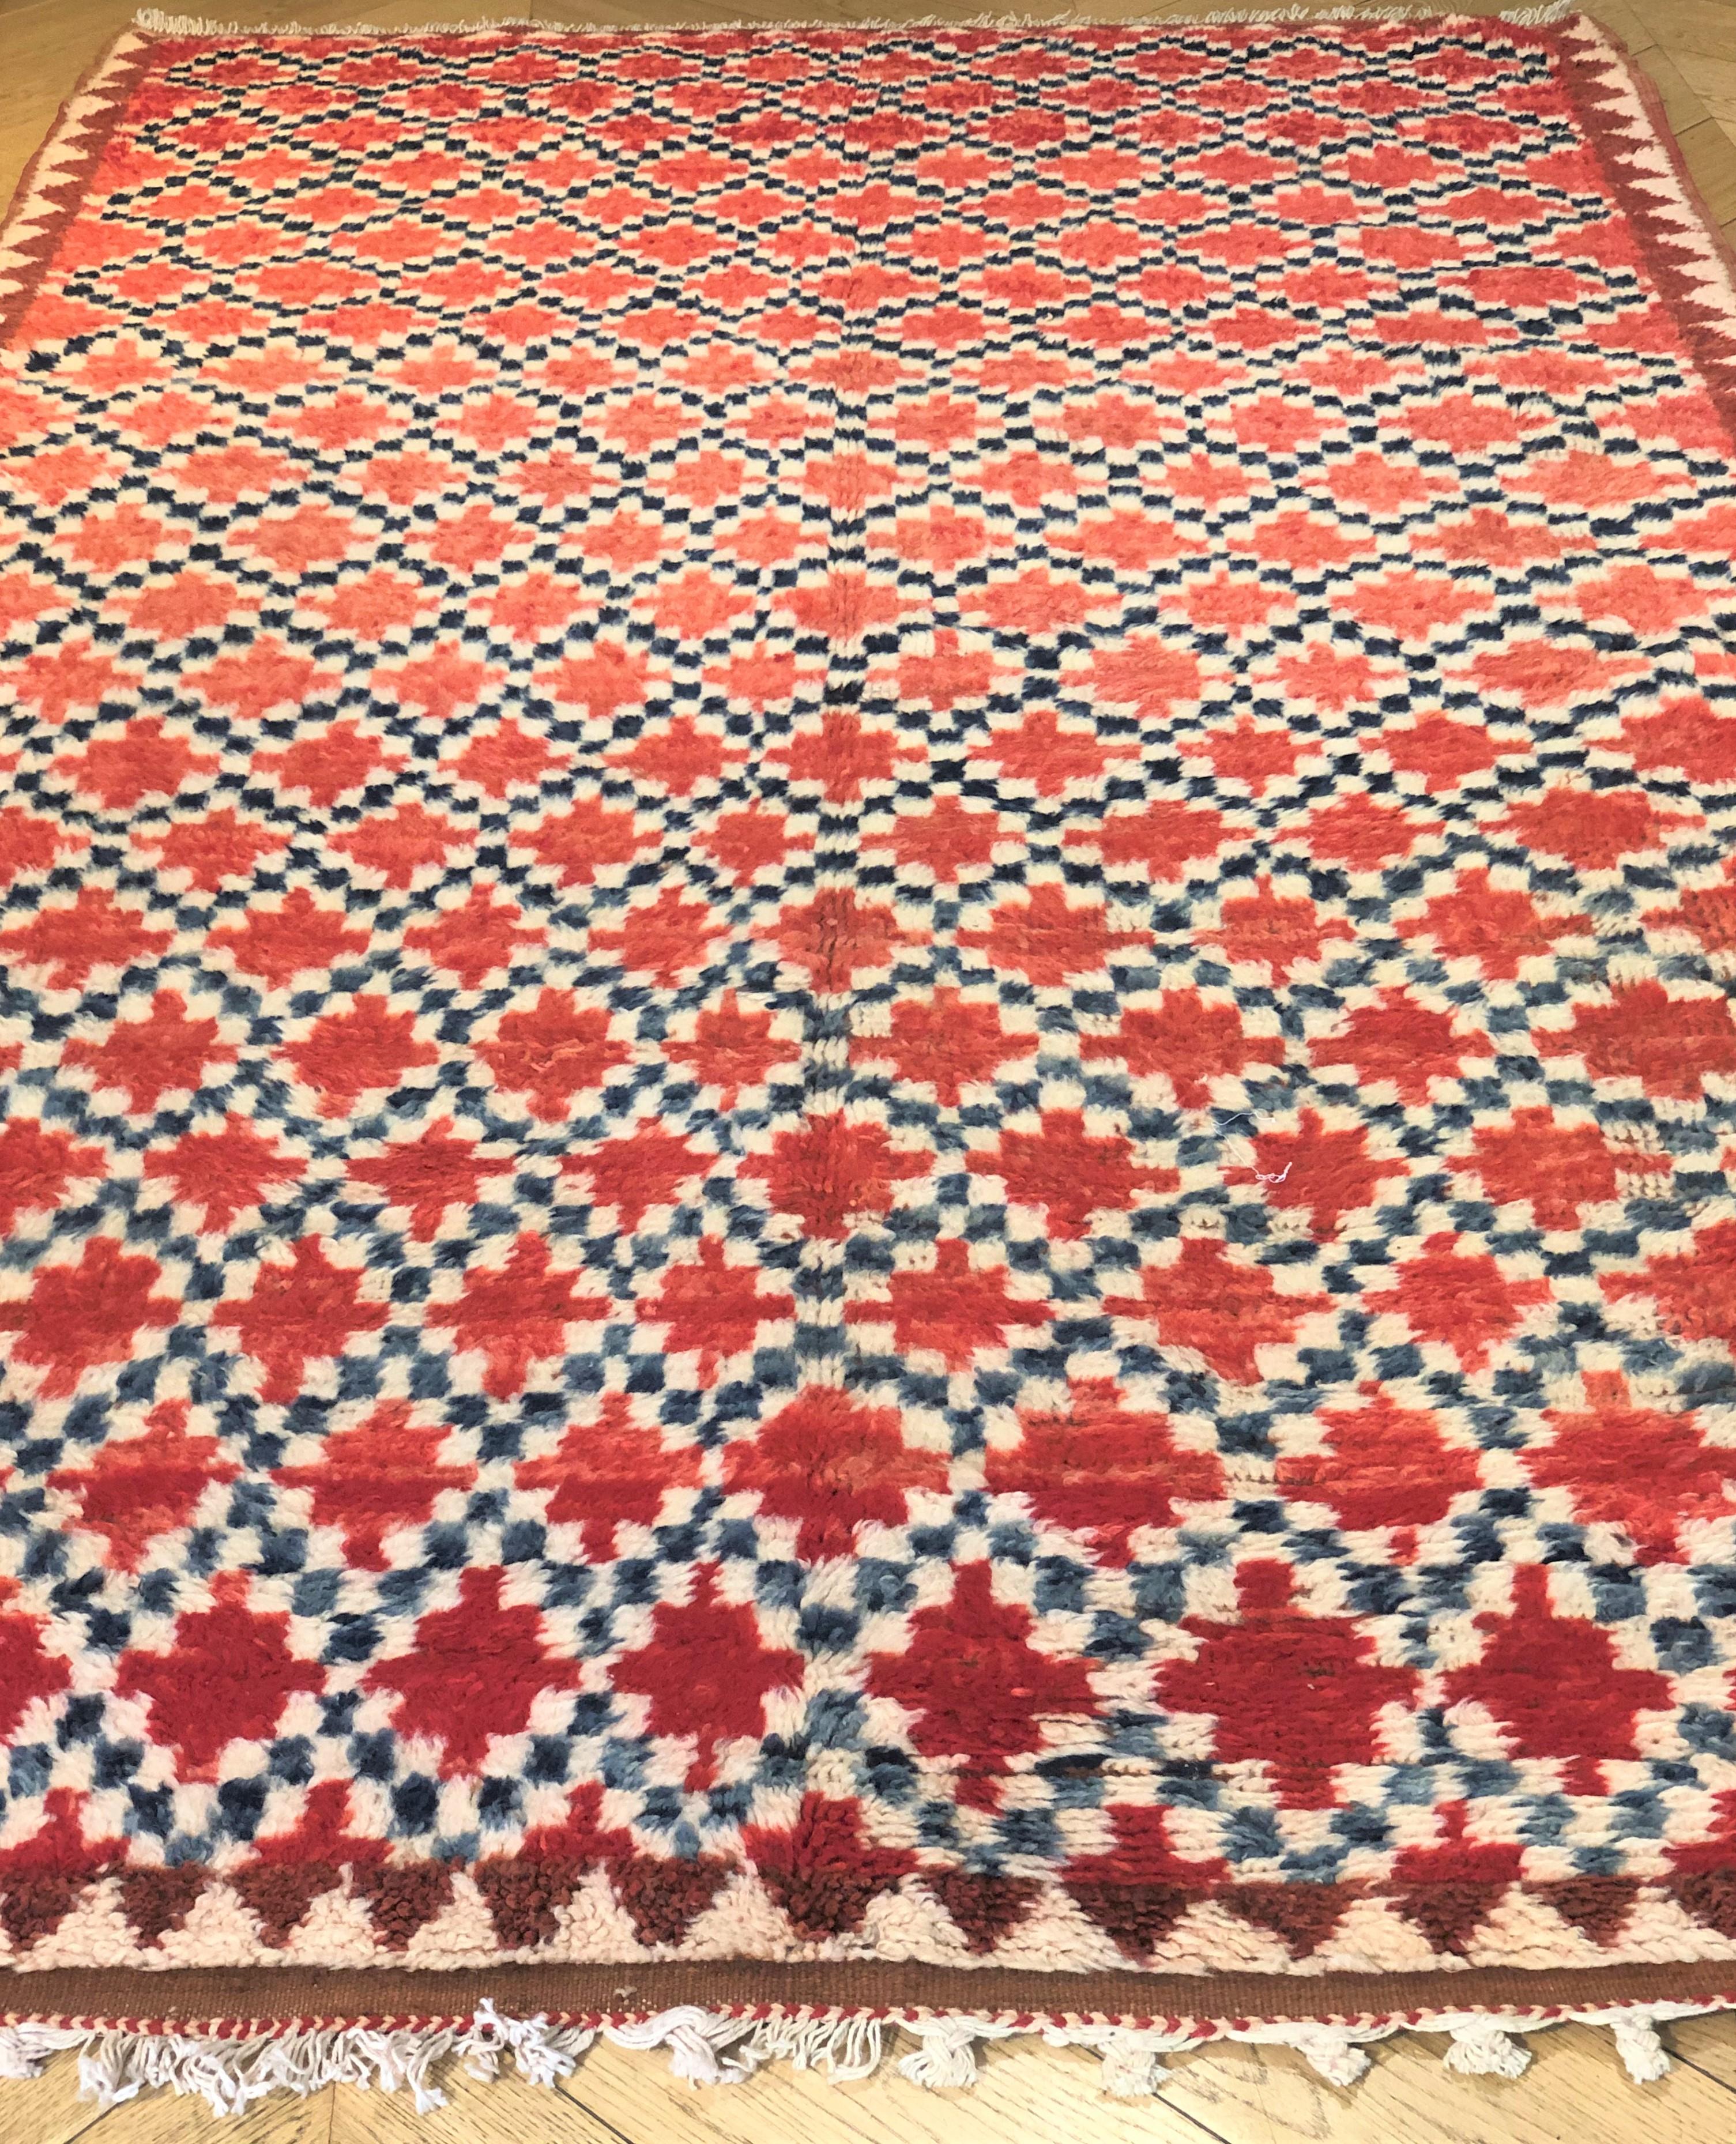 20393 Berbère cm. 255 x 147 € 2,800
Vintage tapis Azilal avec différentes nuances de rouge / orange, blanc crème, noir. Les tapis de l'Azilal proviennent de la région escarpée de l'Azilal (région marocaine des Berbères), située dans les montagnes